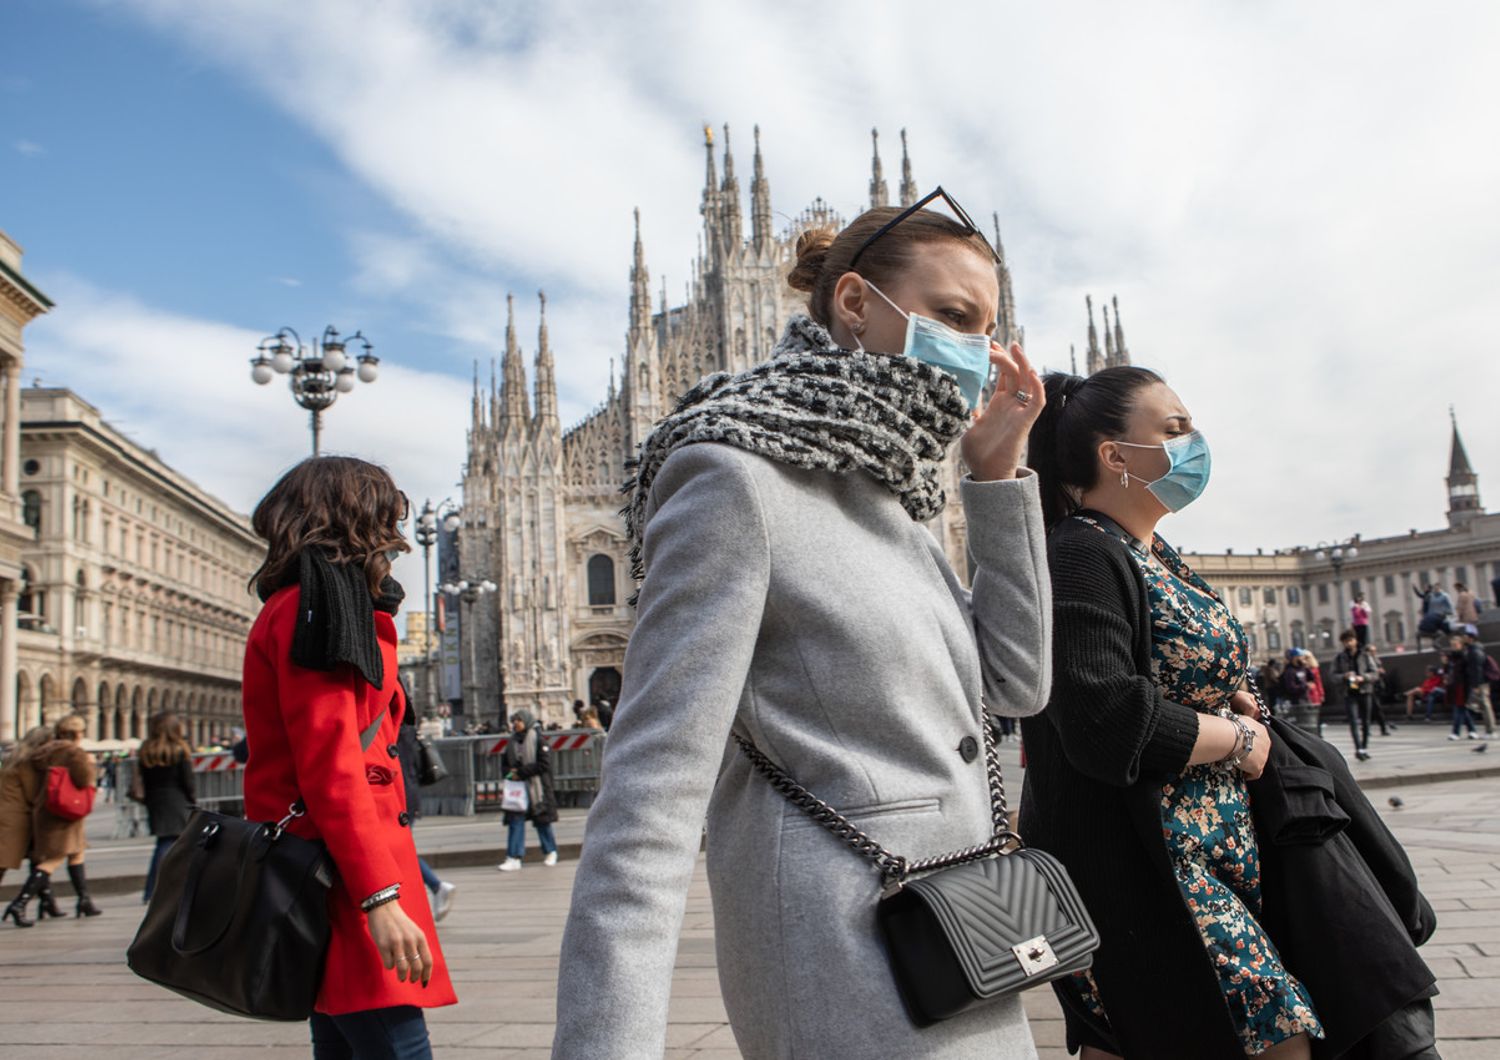 Turisti in piazza Duomo a Milano